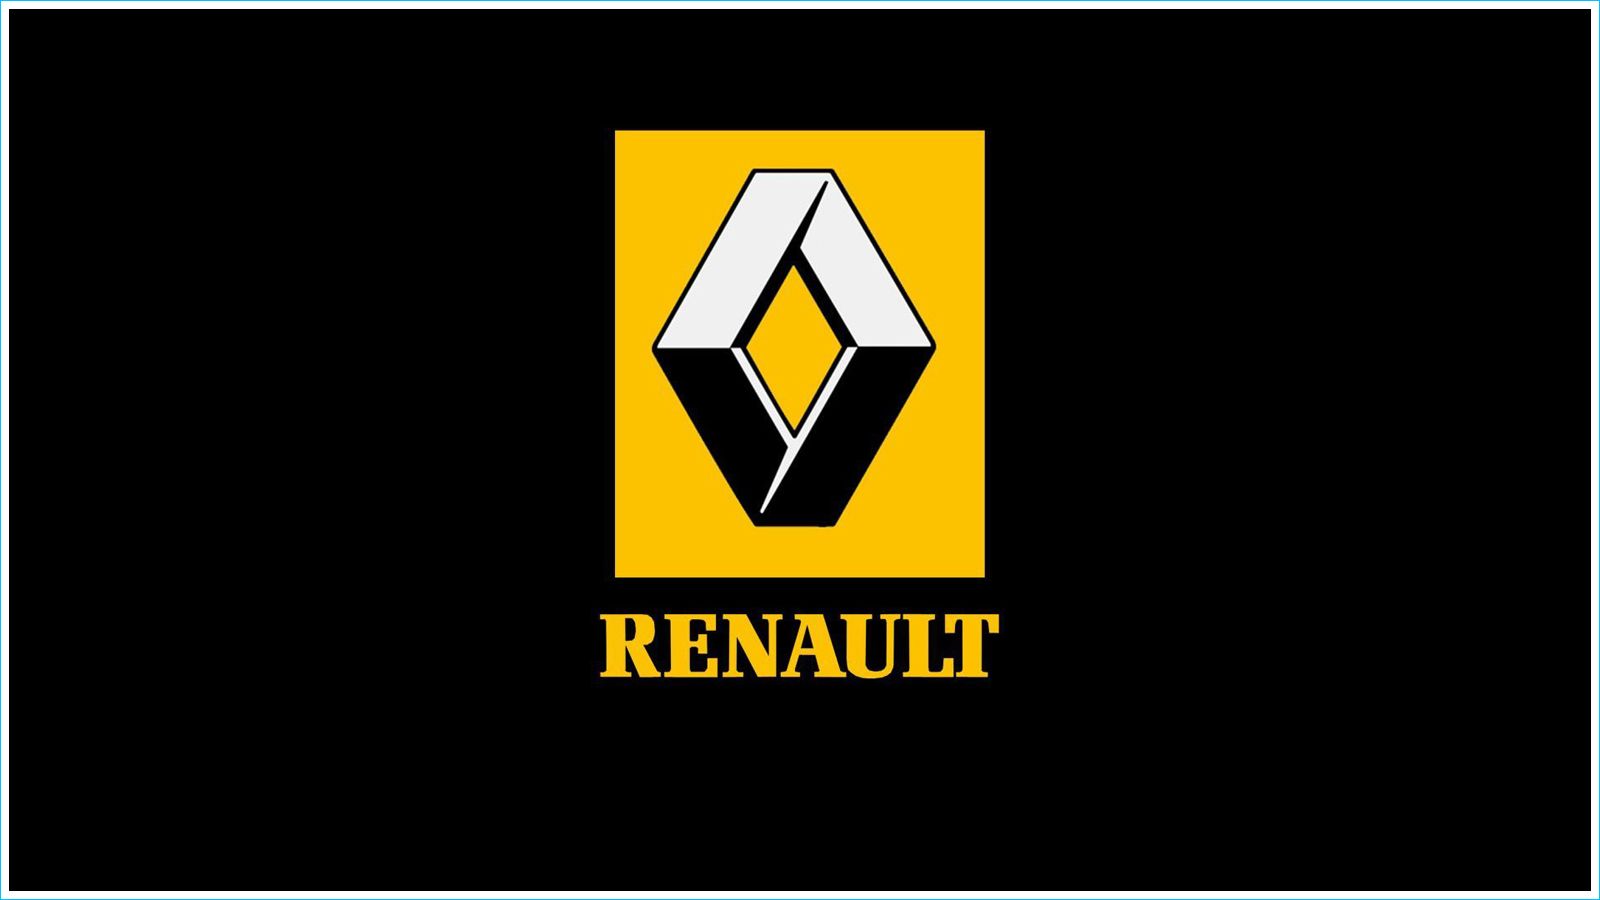 Autos-Renault: Les ventes de voitures en chute libre depuis 3 ans